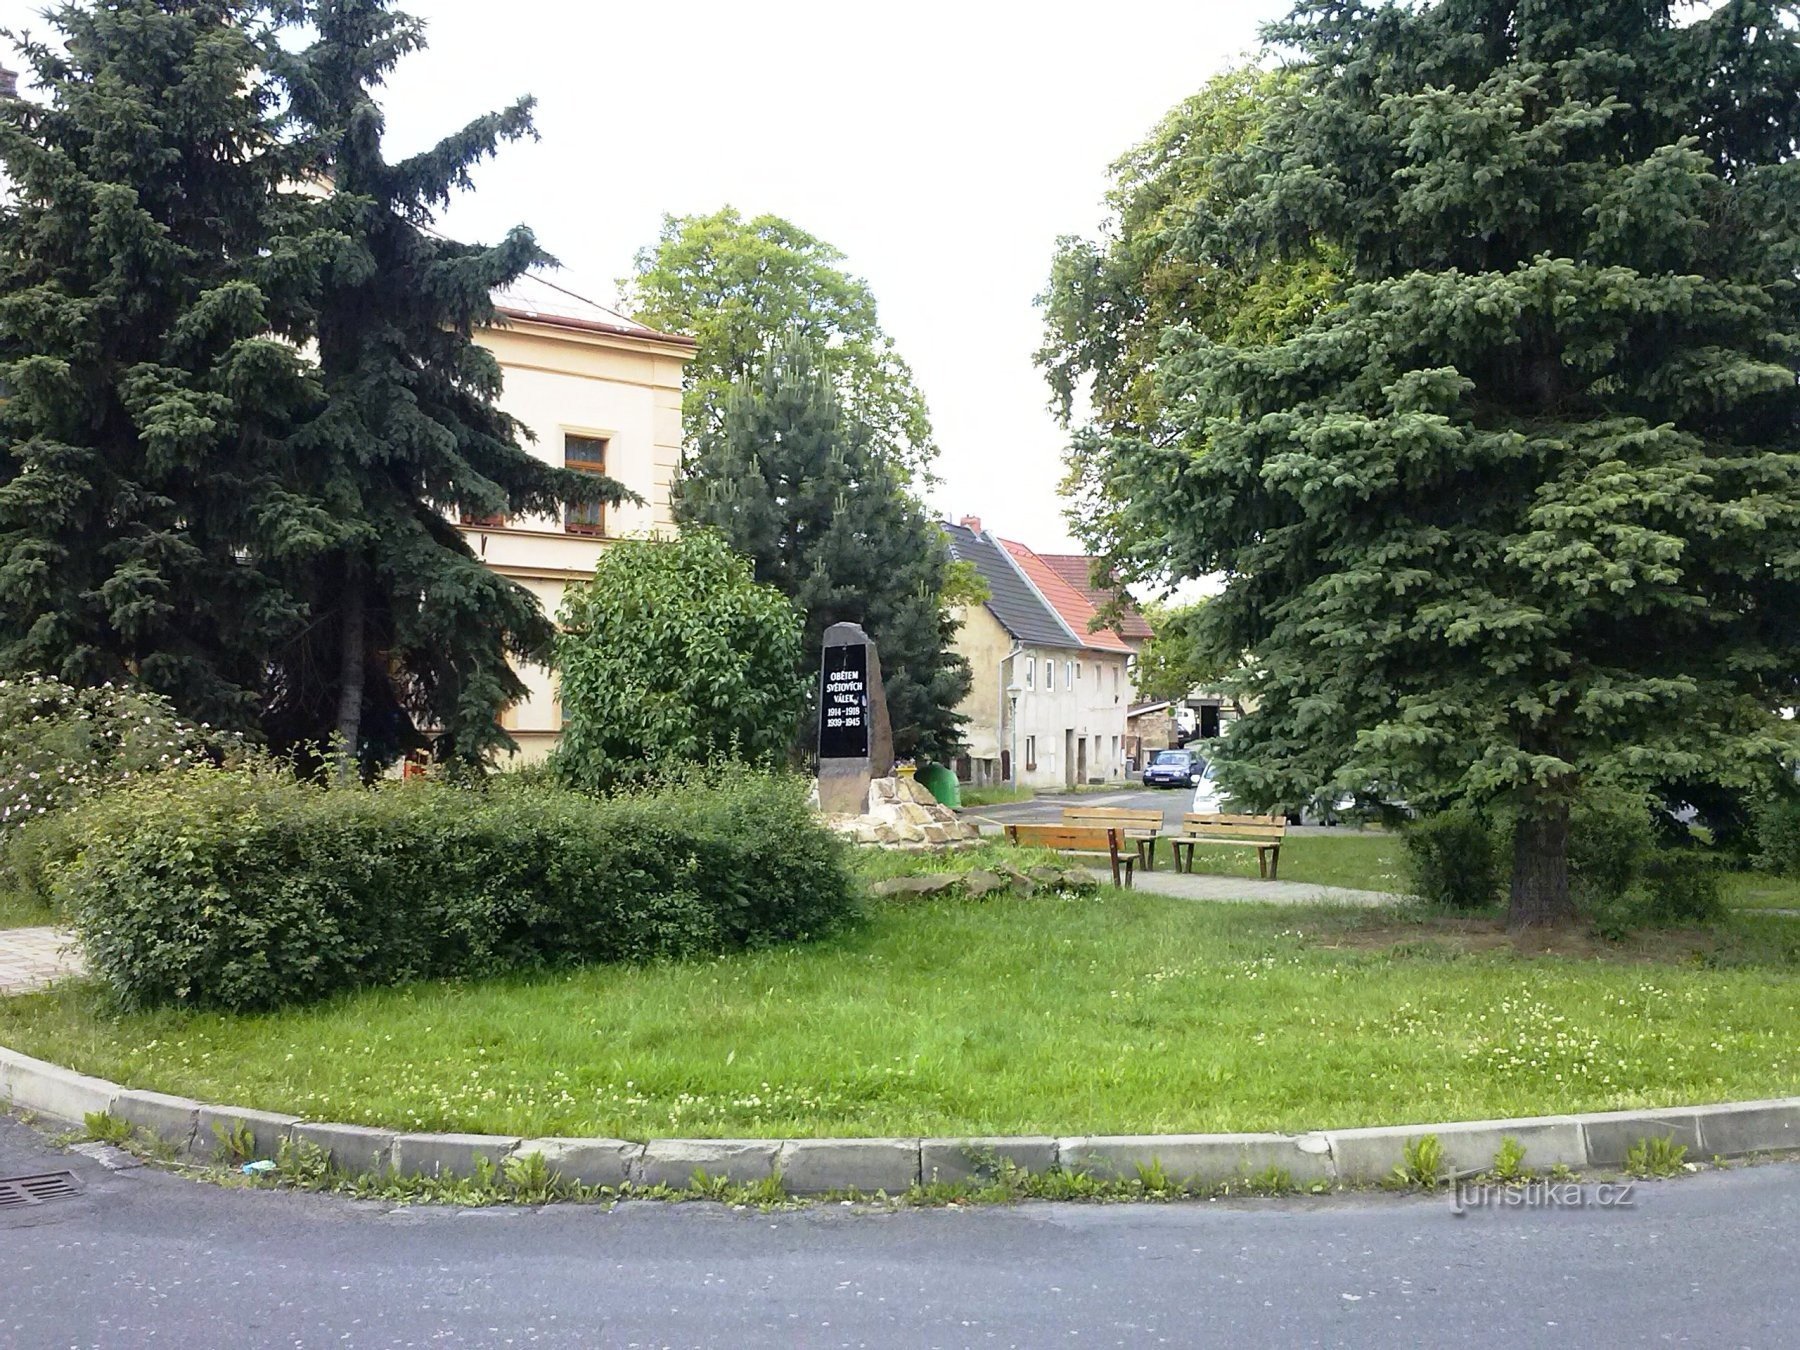 2. En semitrailer i Újezdeček med ett monument